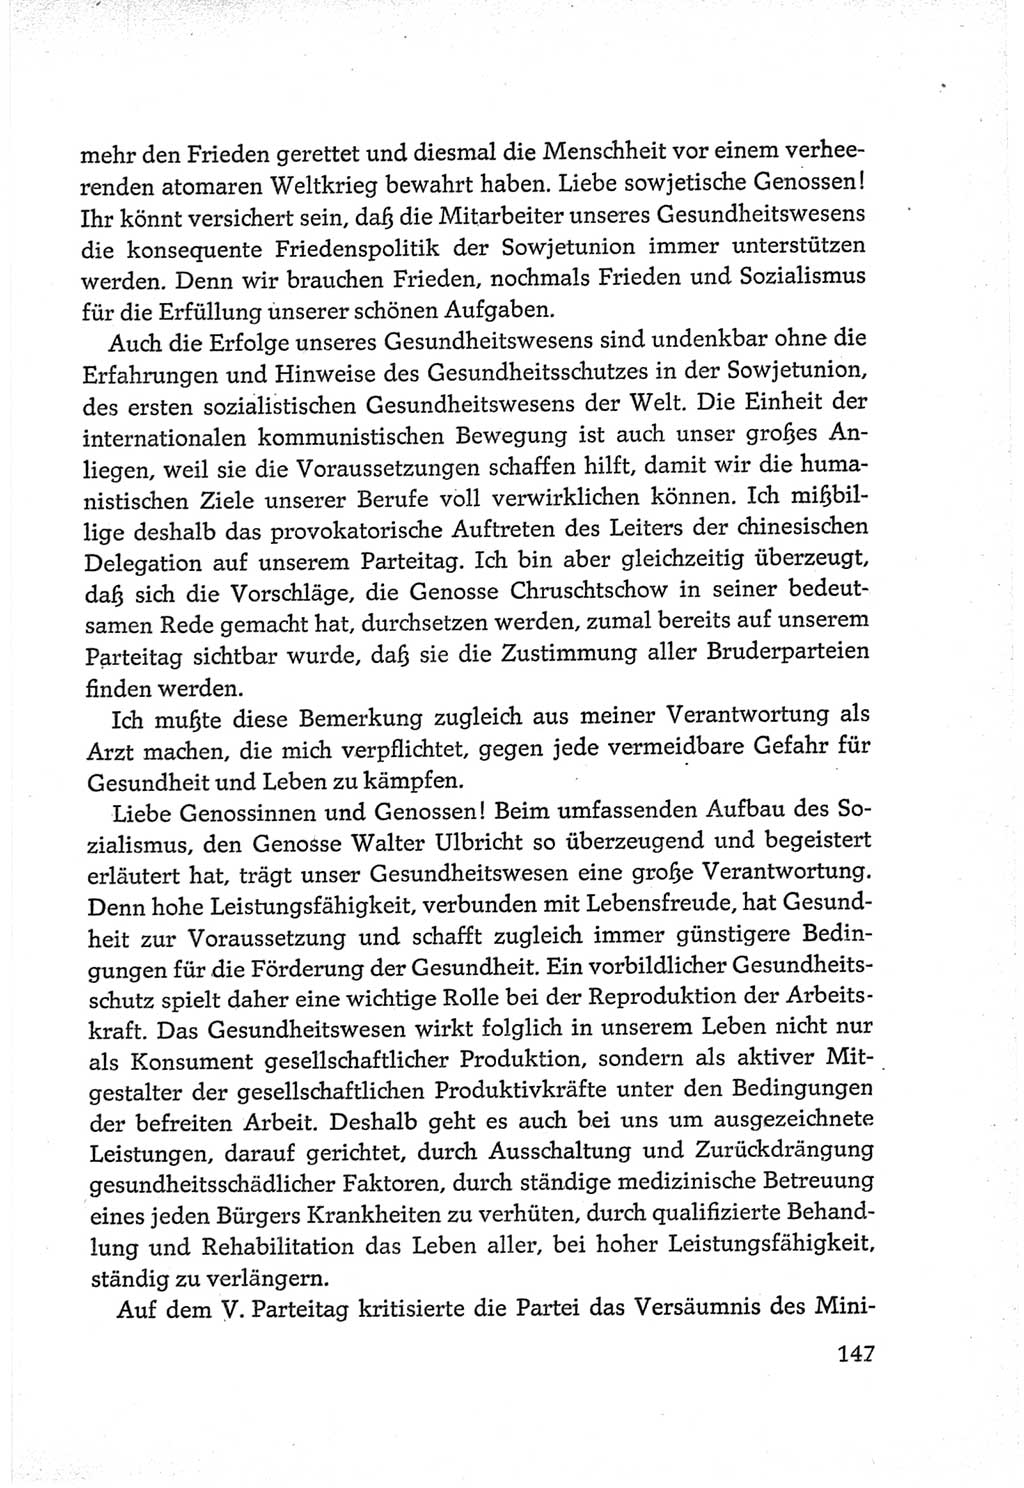 Protokoll der Verhandlungen des Ⅵ. Parteitages der Sozialistischen Einheitspartei Deutschlands (SED) [Deutsche Demokratische Republik (DDR)] 1963, Band Ⅲ, Seite 147 (Prot. Verh. Ⅵ. PT SED DDR 1963, Bd. Ⅲ, S. 147)